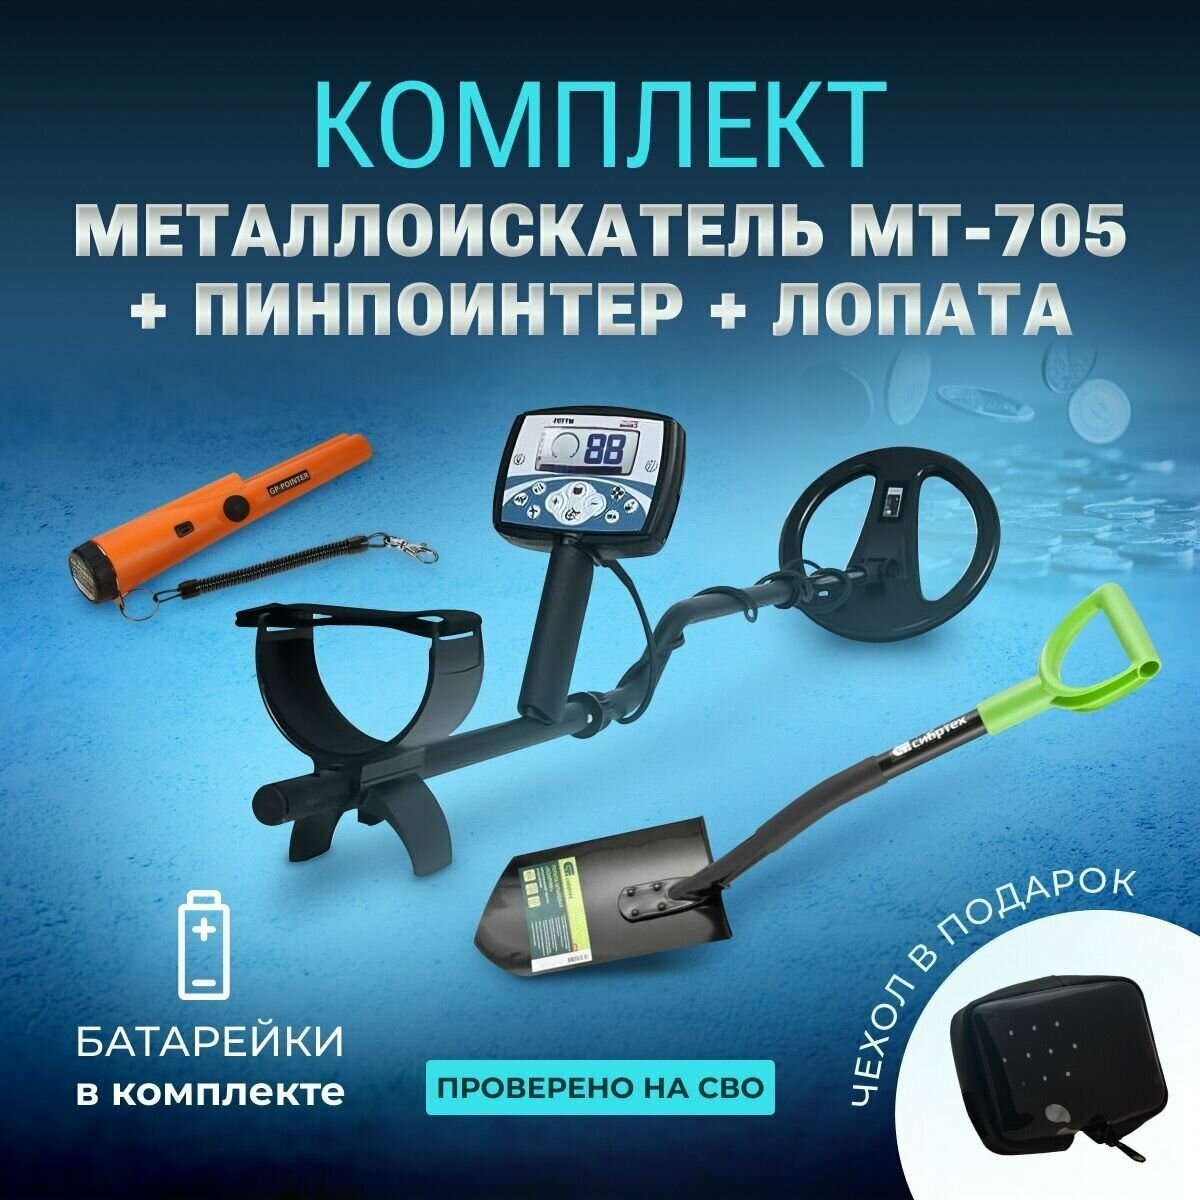 Металлоискатель МТ-705+комплект копателя